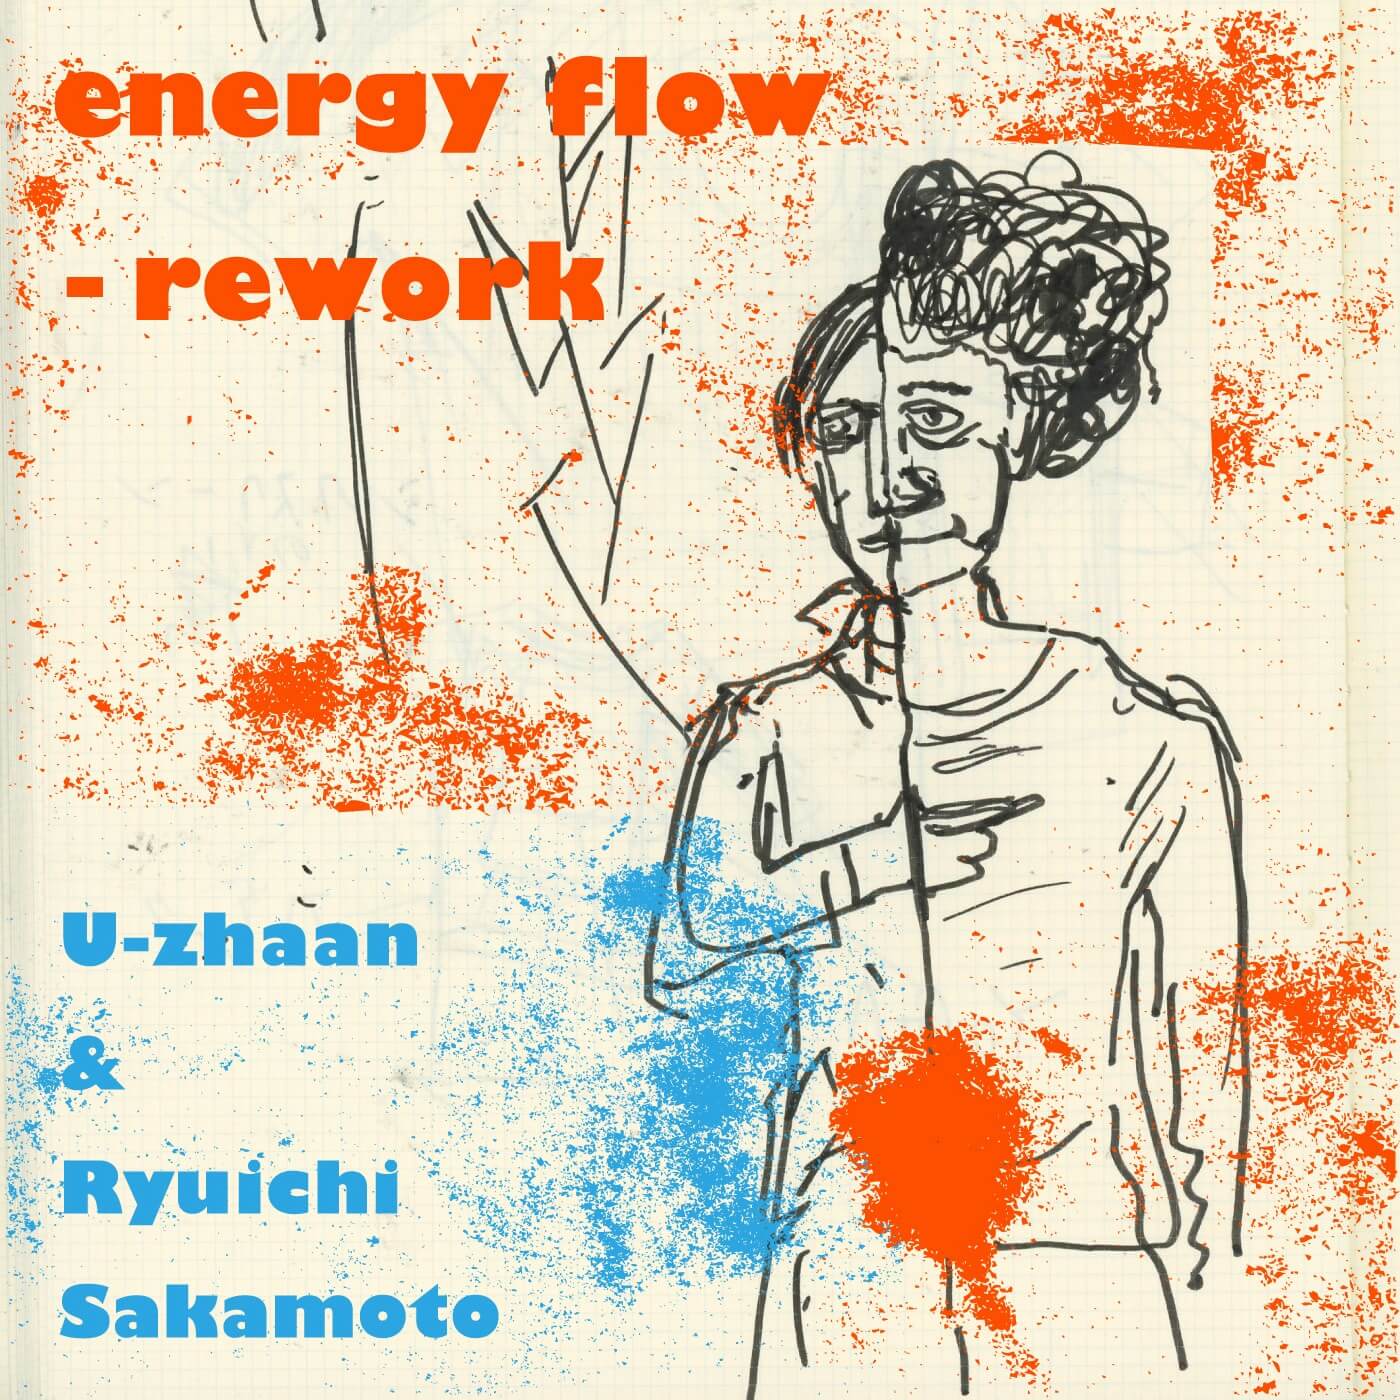 energy-flow-rework_jk